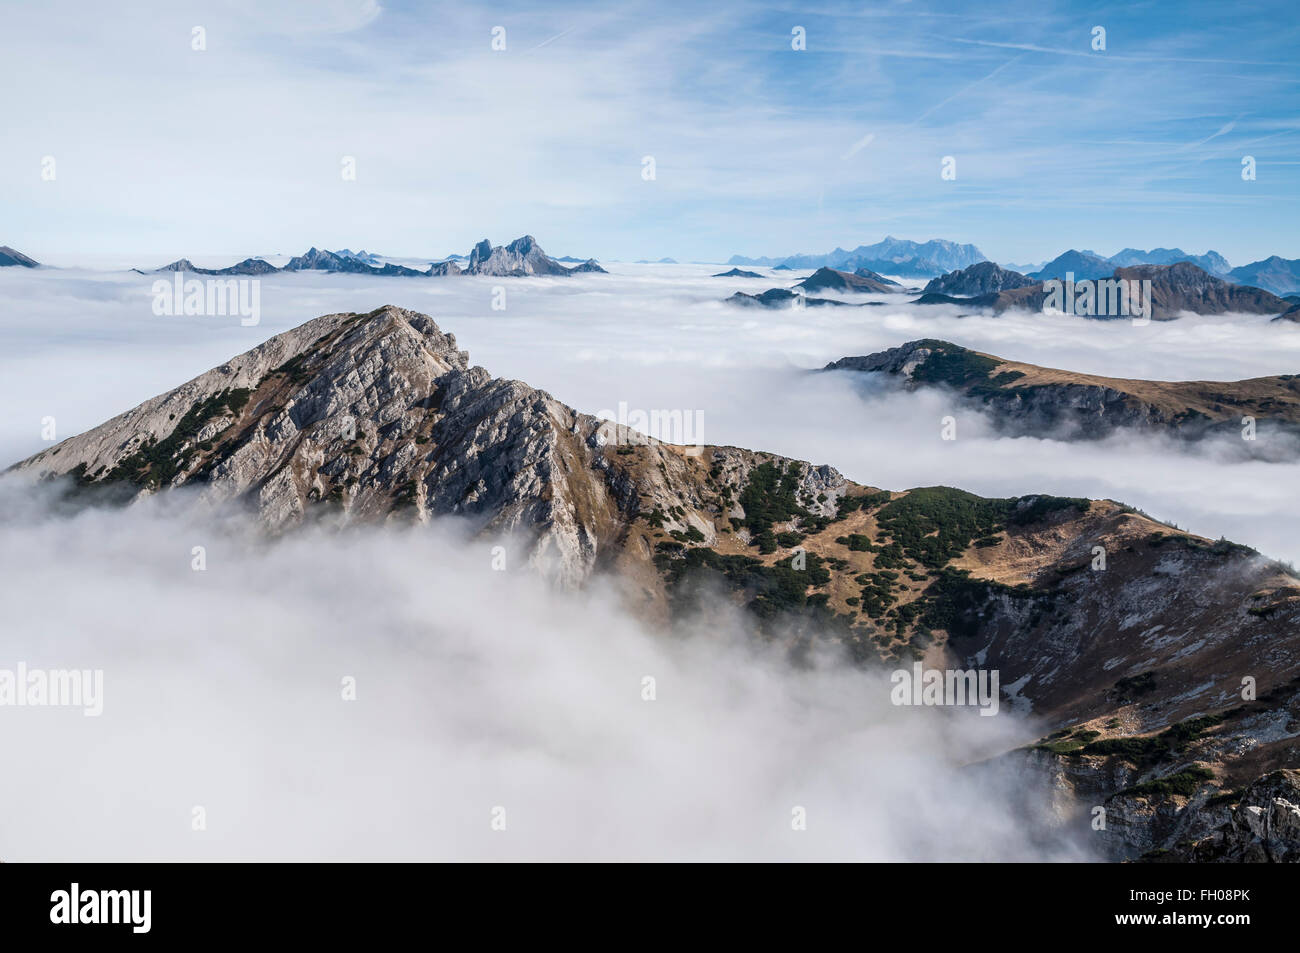 Berg Rohnenspitze, gesehen vom Berg Ponten,  Wolkendecke im Tannheimer Tal, Gipfel ragt aus dem Wolkenmeer,  hinten die Berge Gi Stock Photo